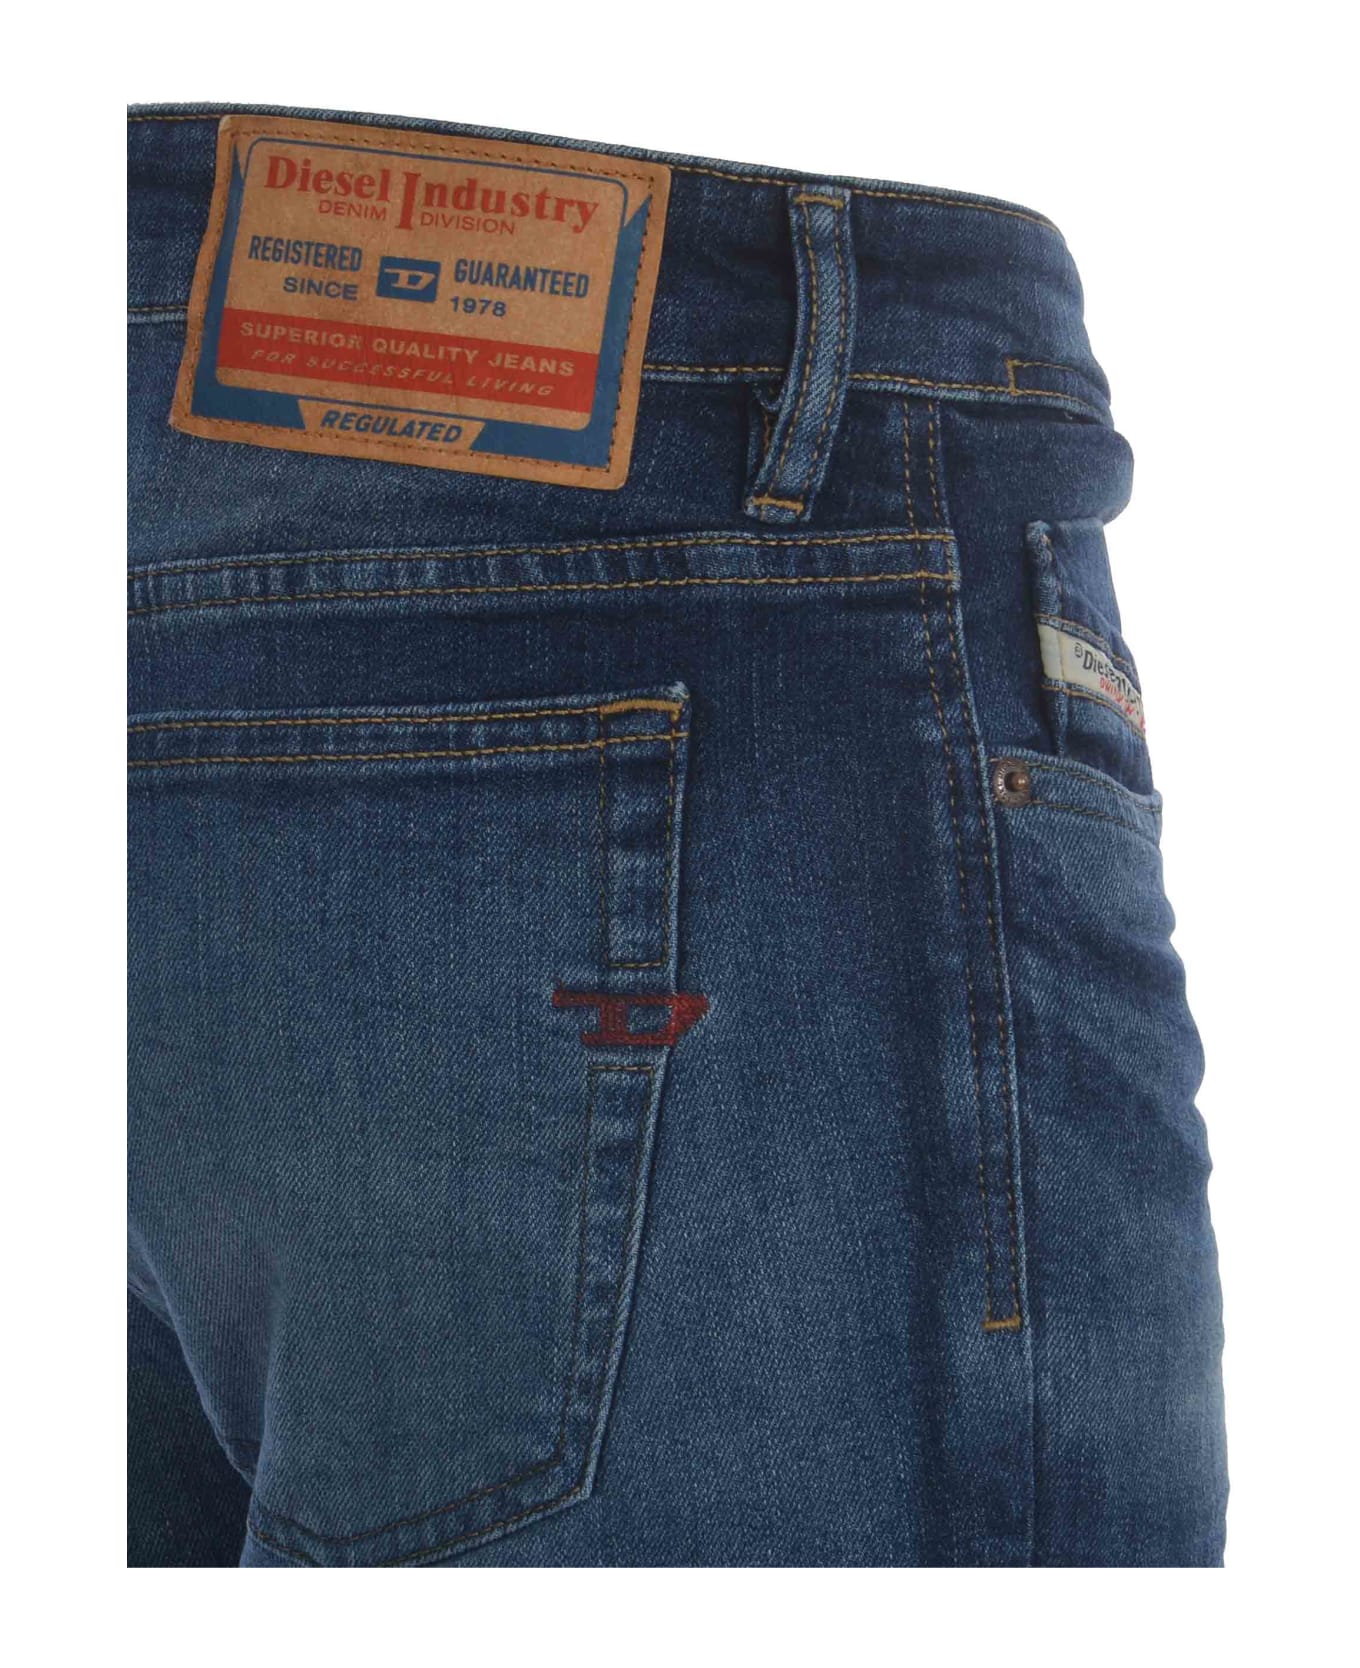 Diesel Jeans Diesel "sleenker" Made Of Denim - Blu デニム